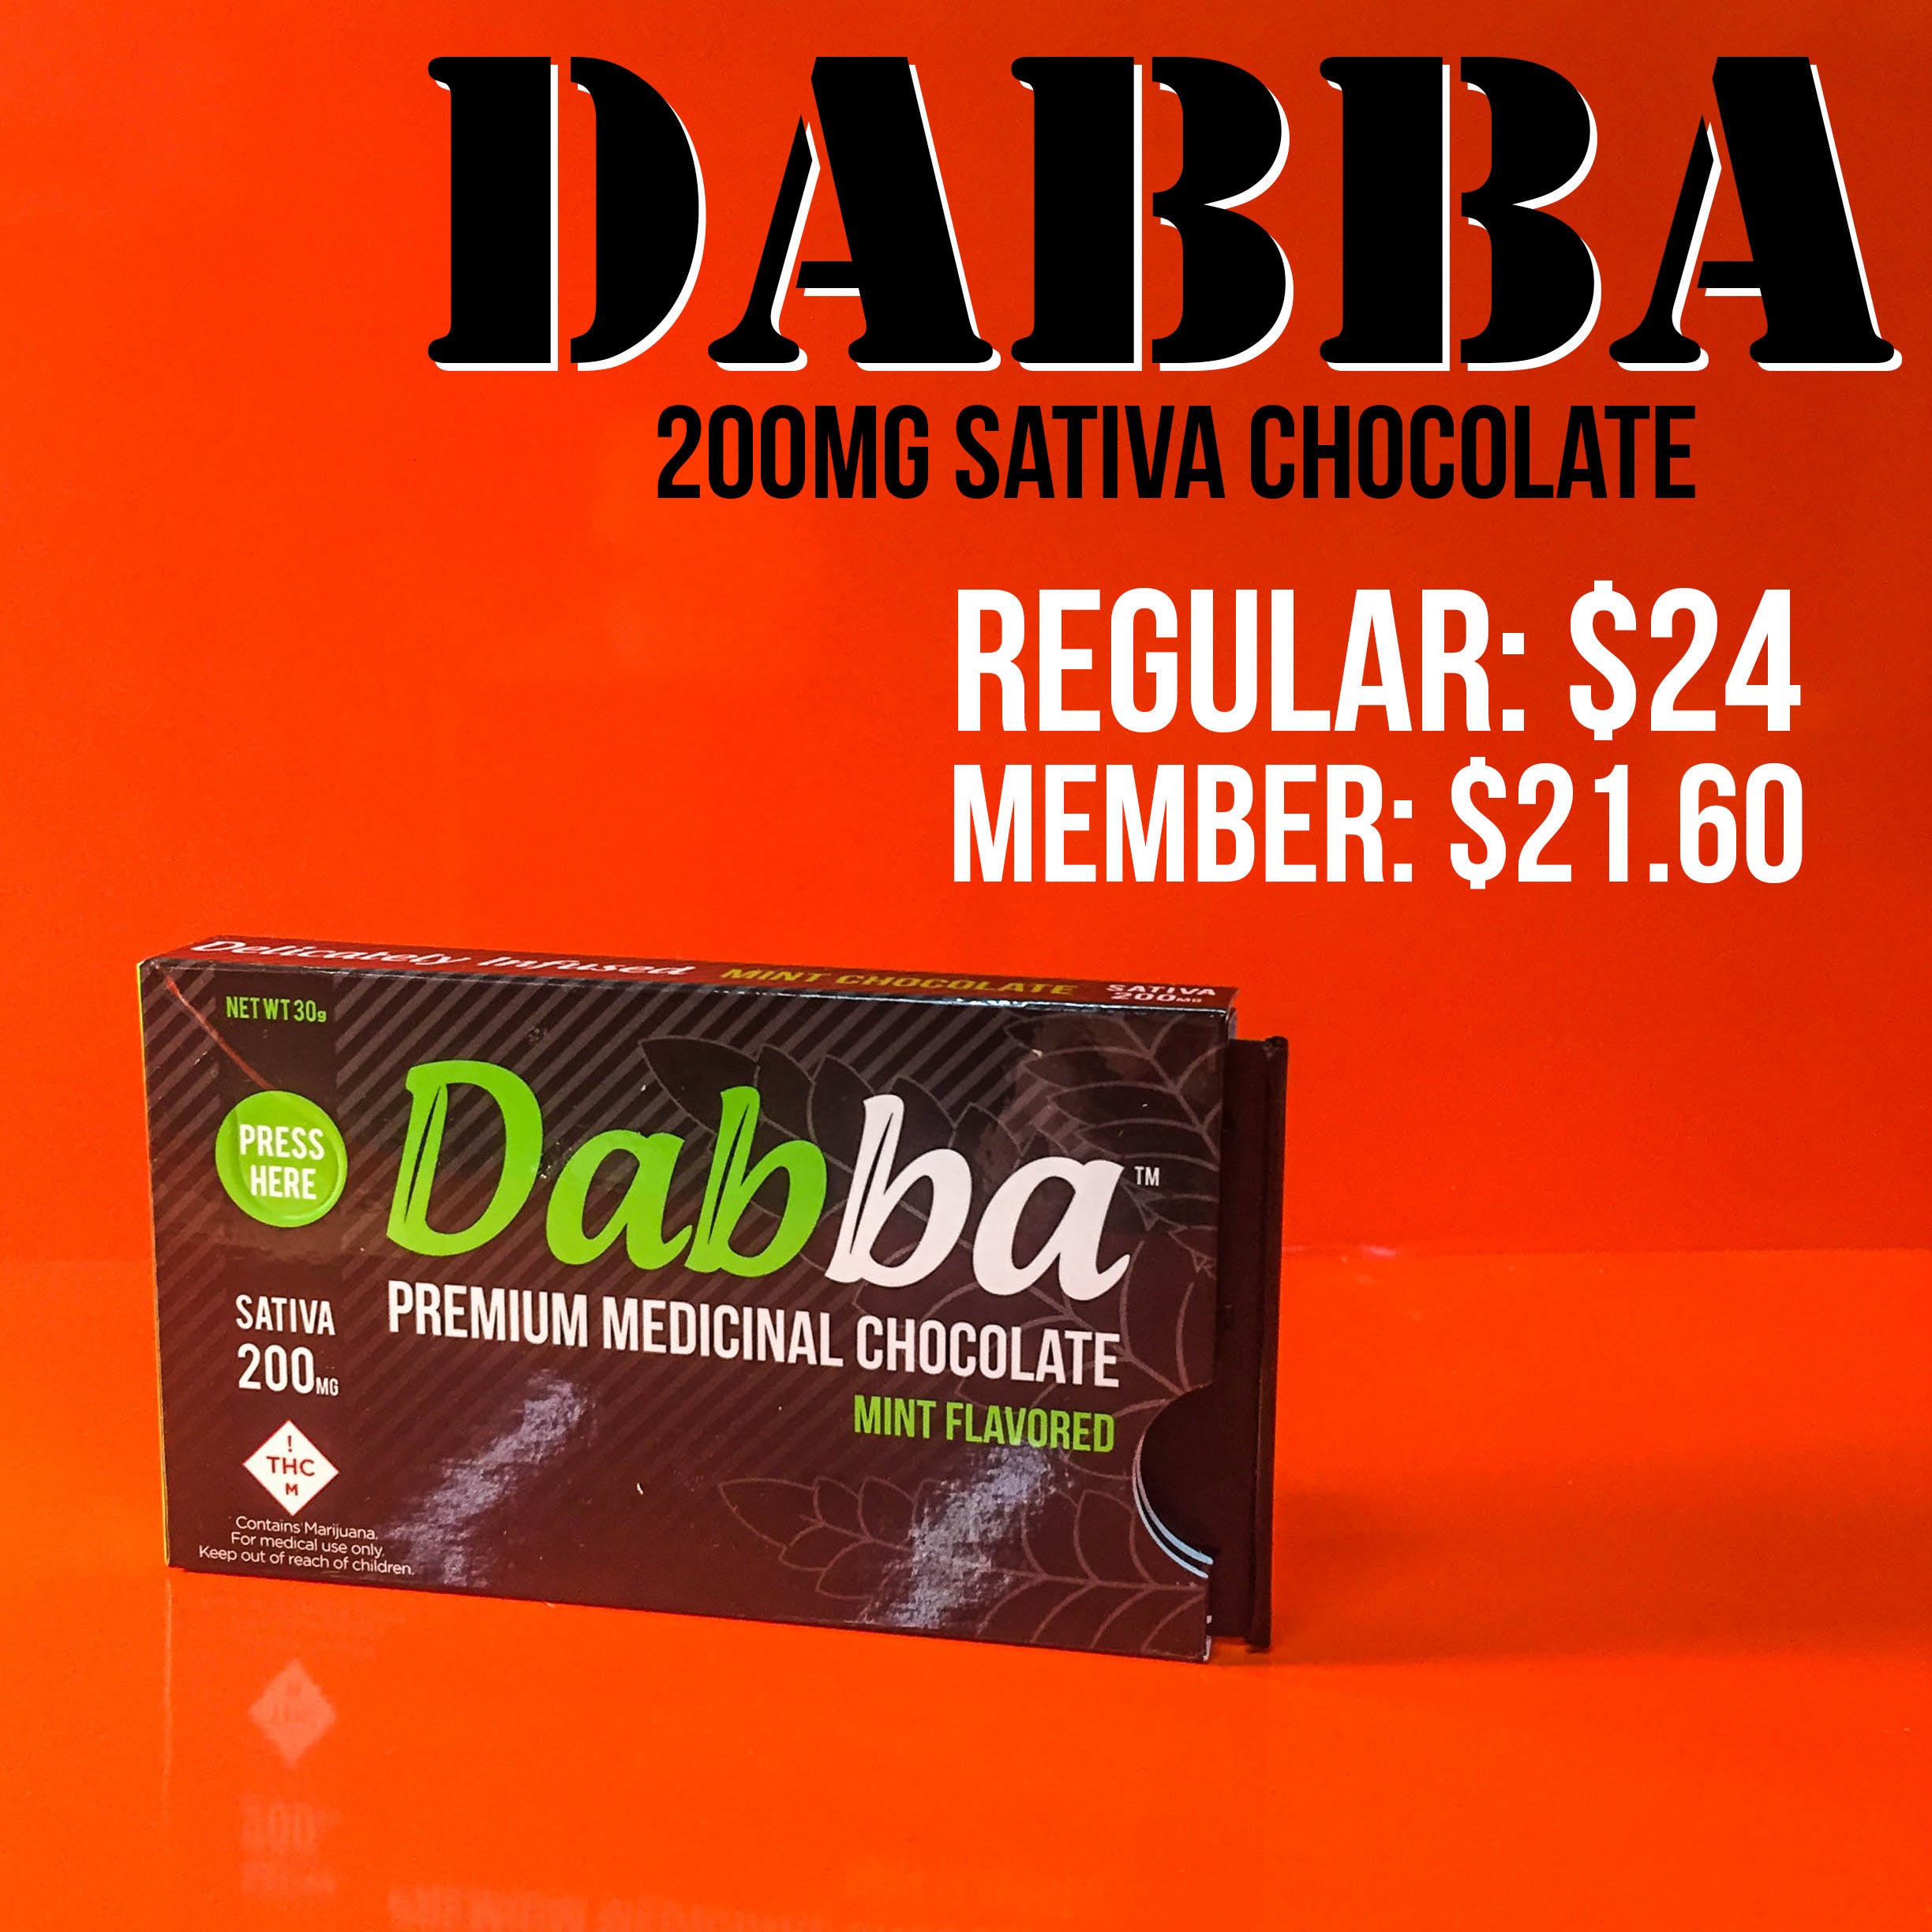 edible-dabba-chocolates-sativa-100mg